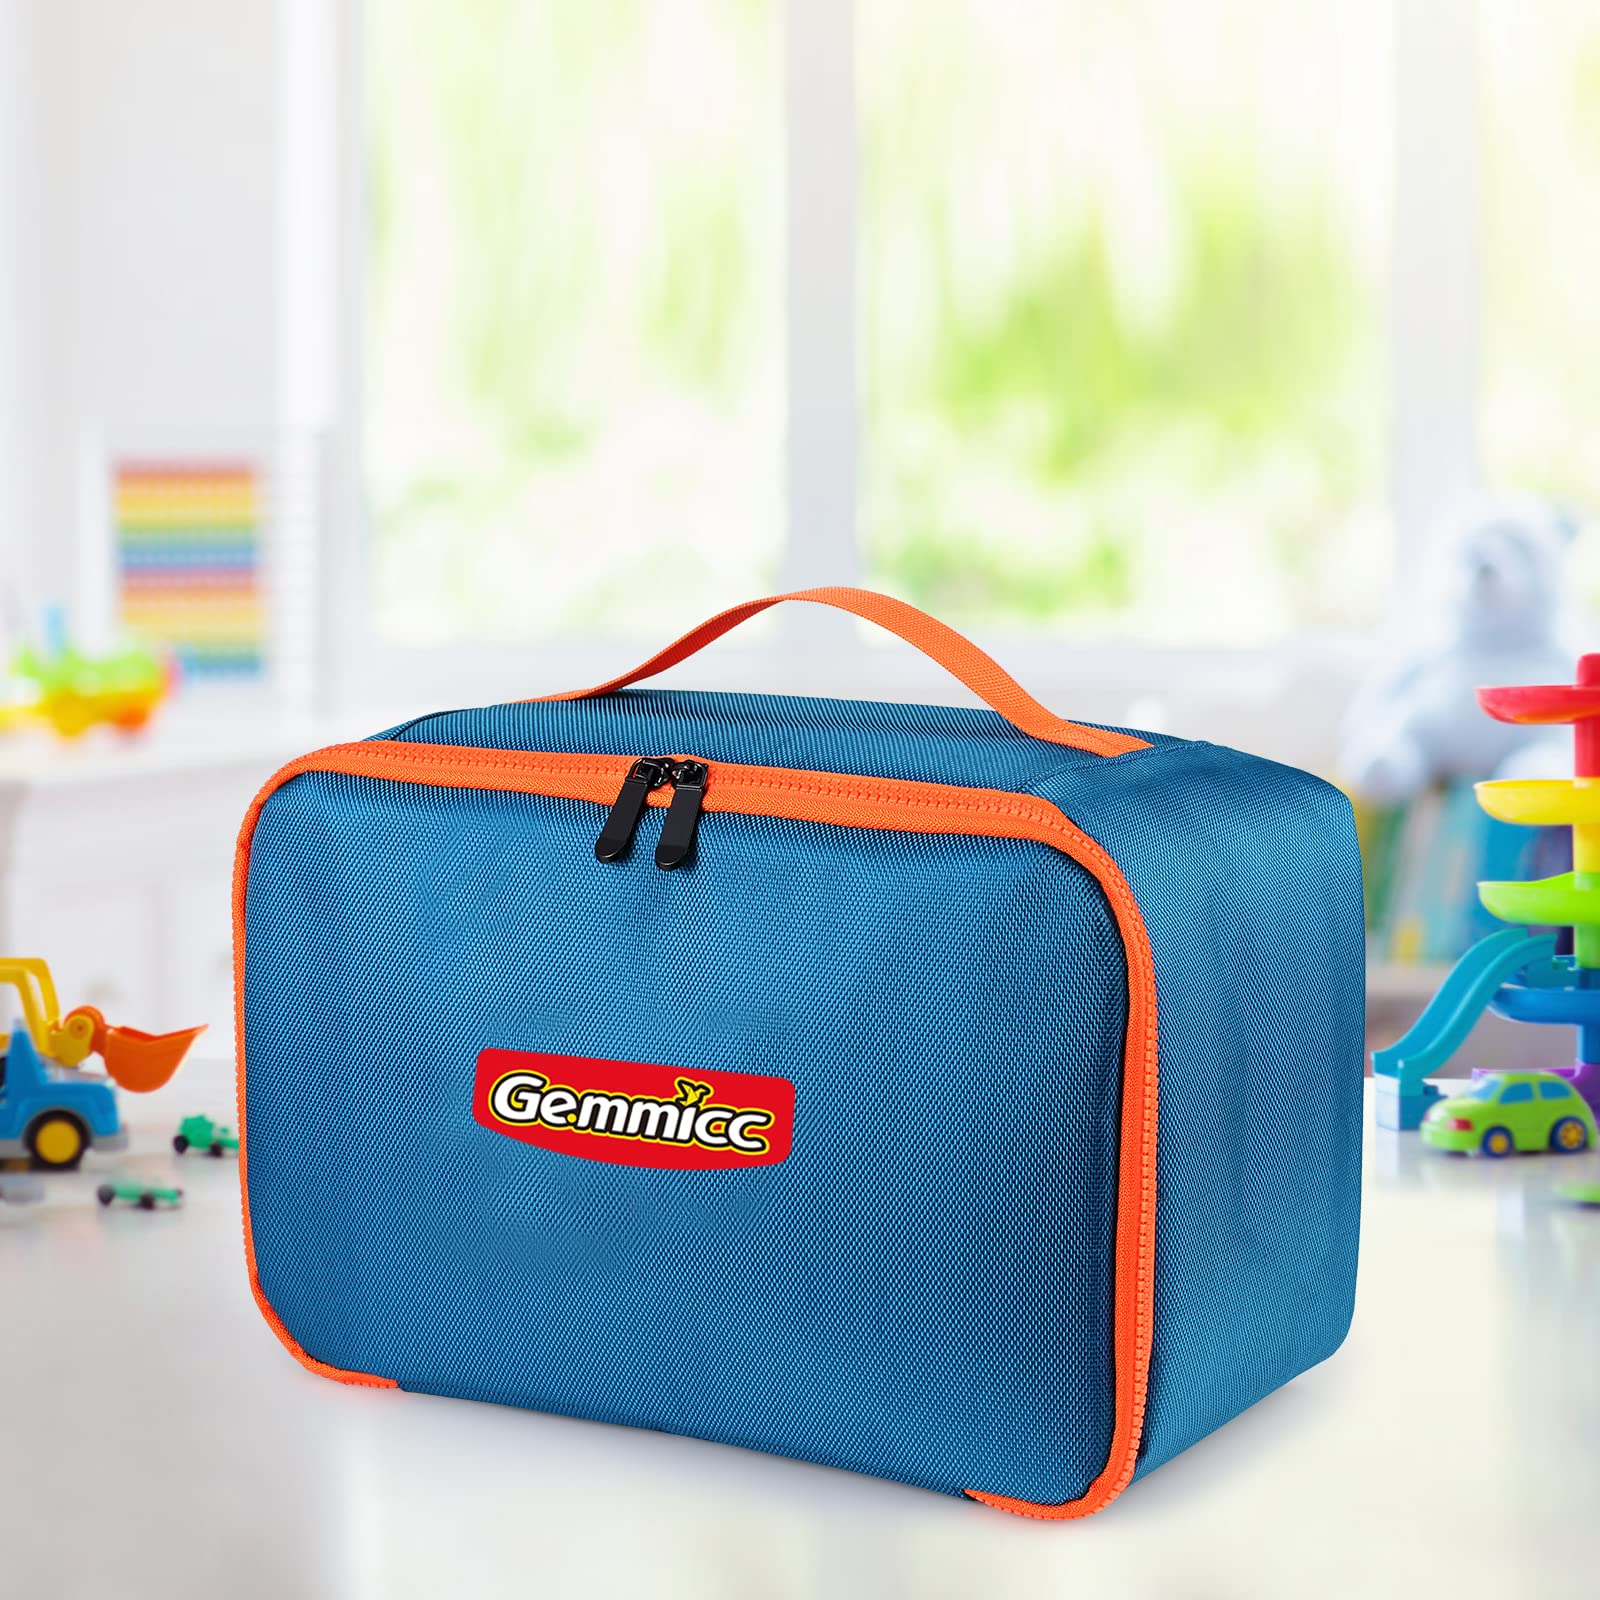 Gemmicc 2PCS Magnetic Car Set + Toy Carry Bag